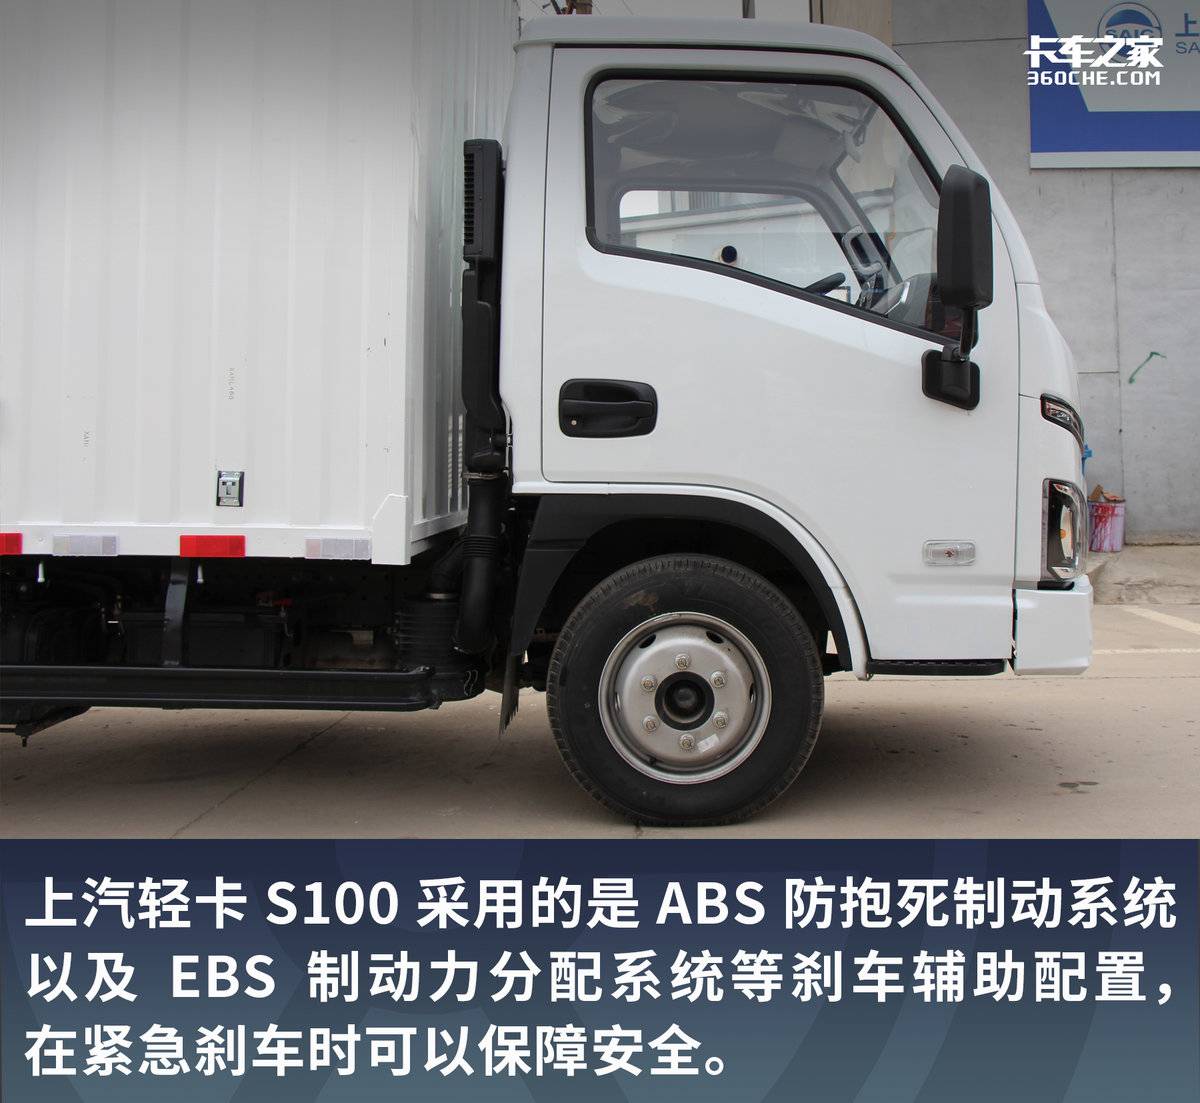 货箱长度4.17米合规装1.8吨 堪比标载轻卡 上汽轻卡S100报价7.11万